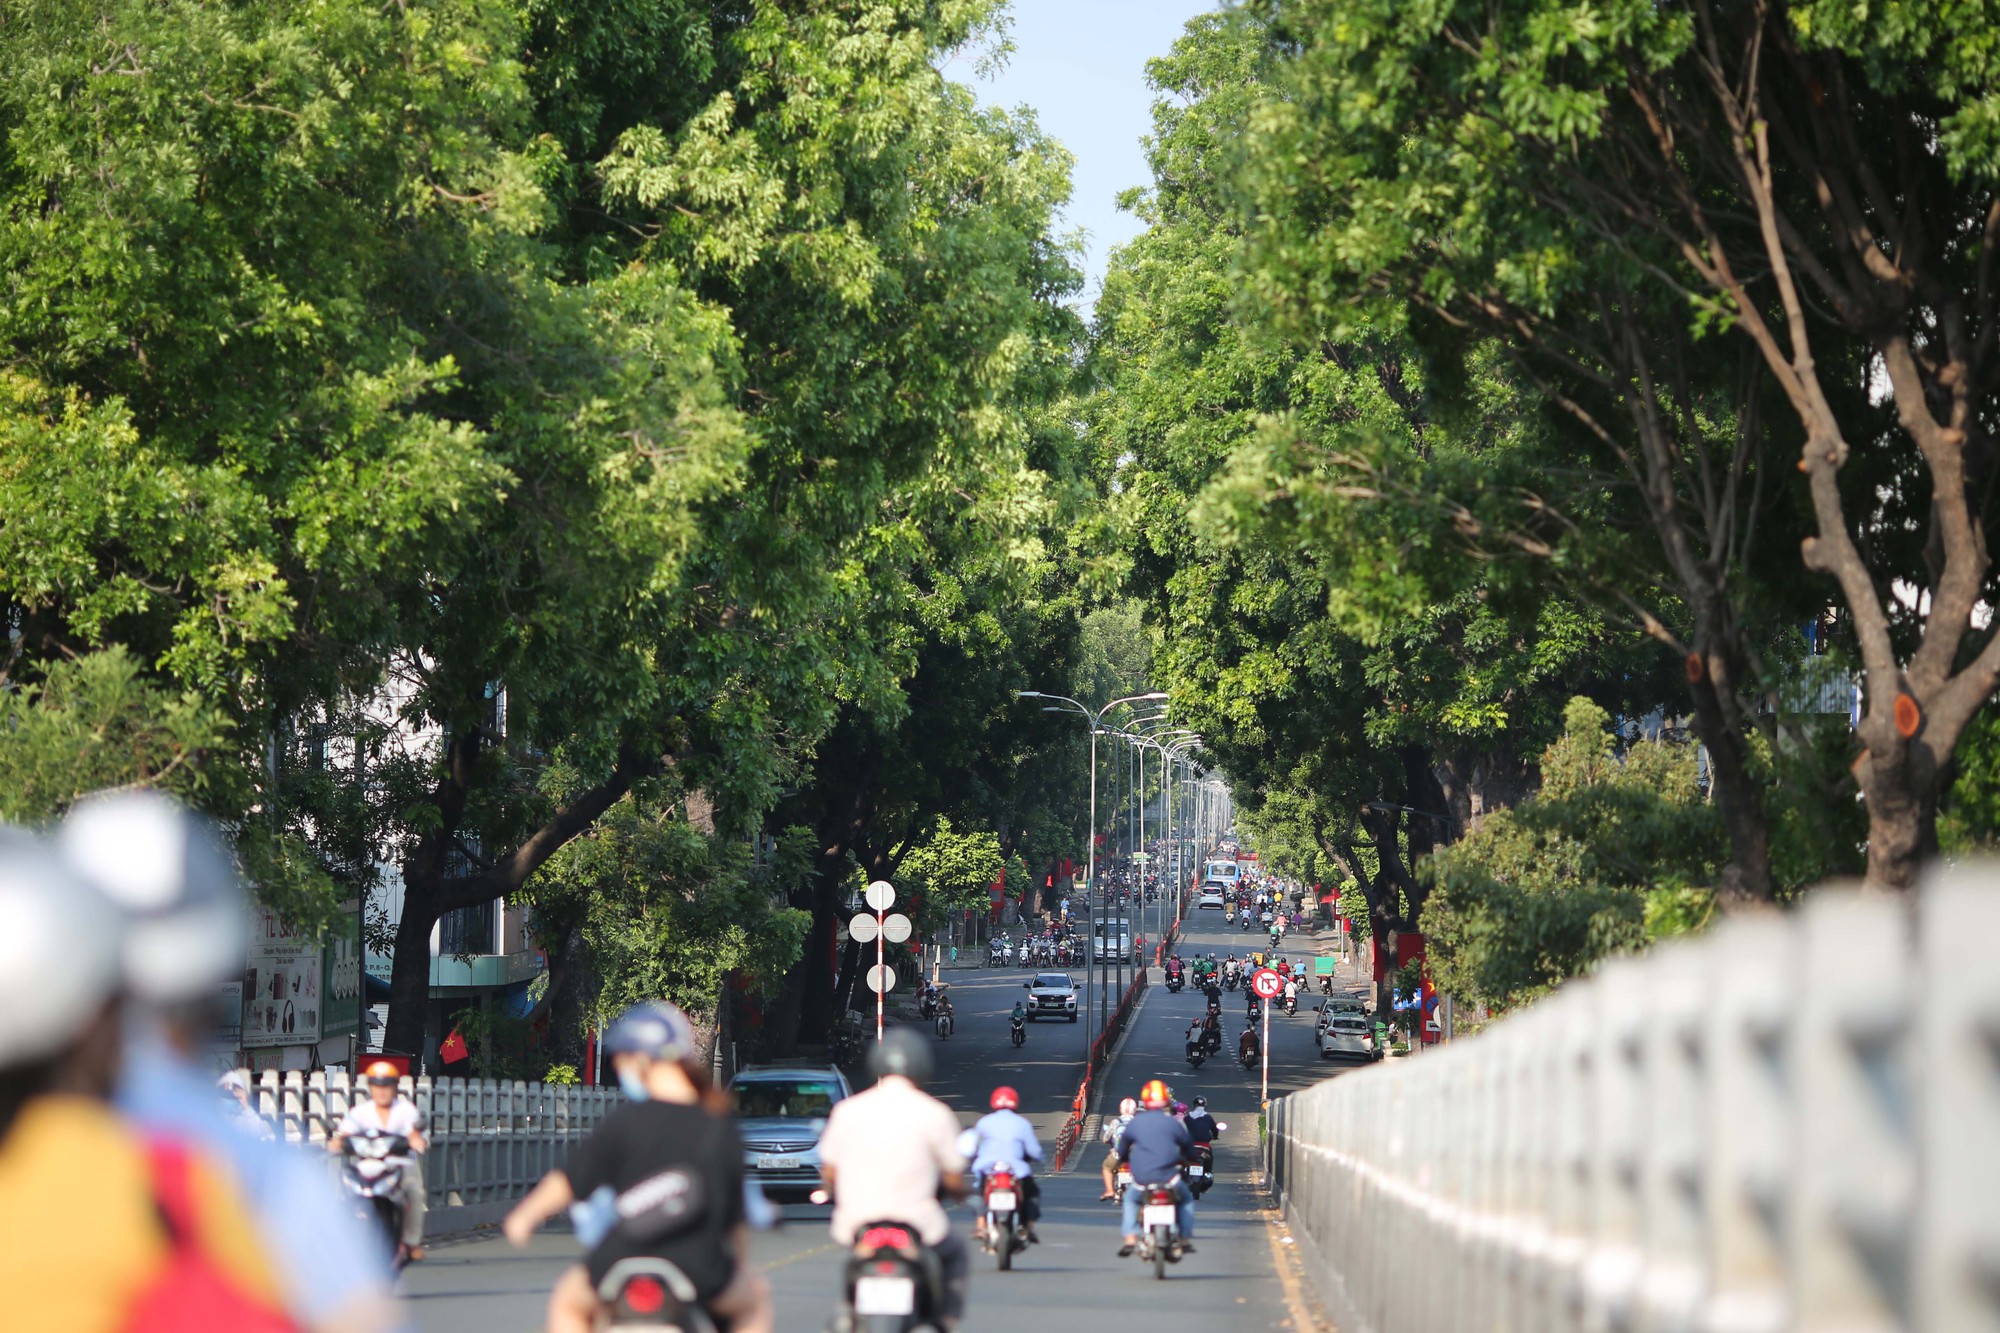 Kỷ niệm 30-4 TP HCM đánh dấu một trang mới trong lịch sử của Việt Nam và thành phố Hồ Chí Minh. Hãy khám phá những hình ảnh đầy cảm xúc và ý nghĩa đến từ ngày này. Cùng chia sẻ và cảm nhận với chúng tôi về sự kiện quan trọng này trong lịch sử dân tộc.